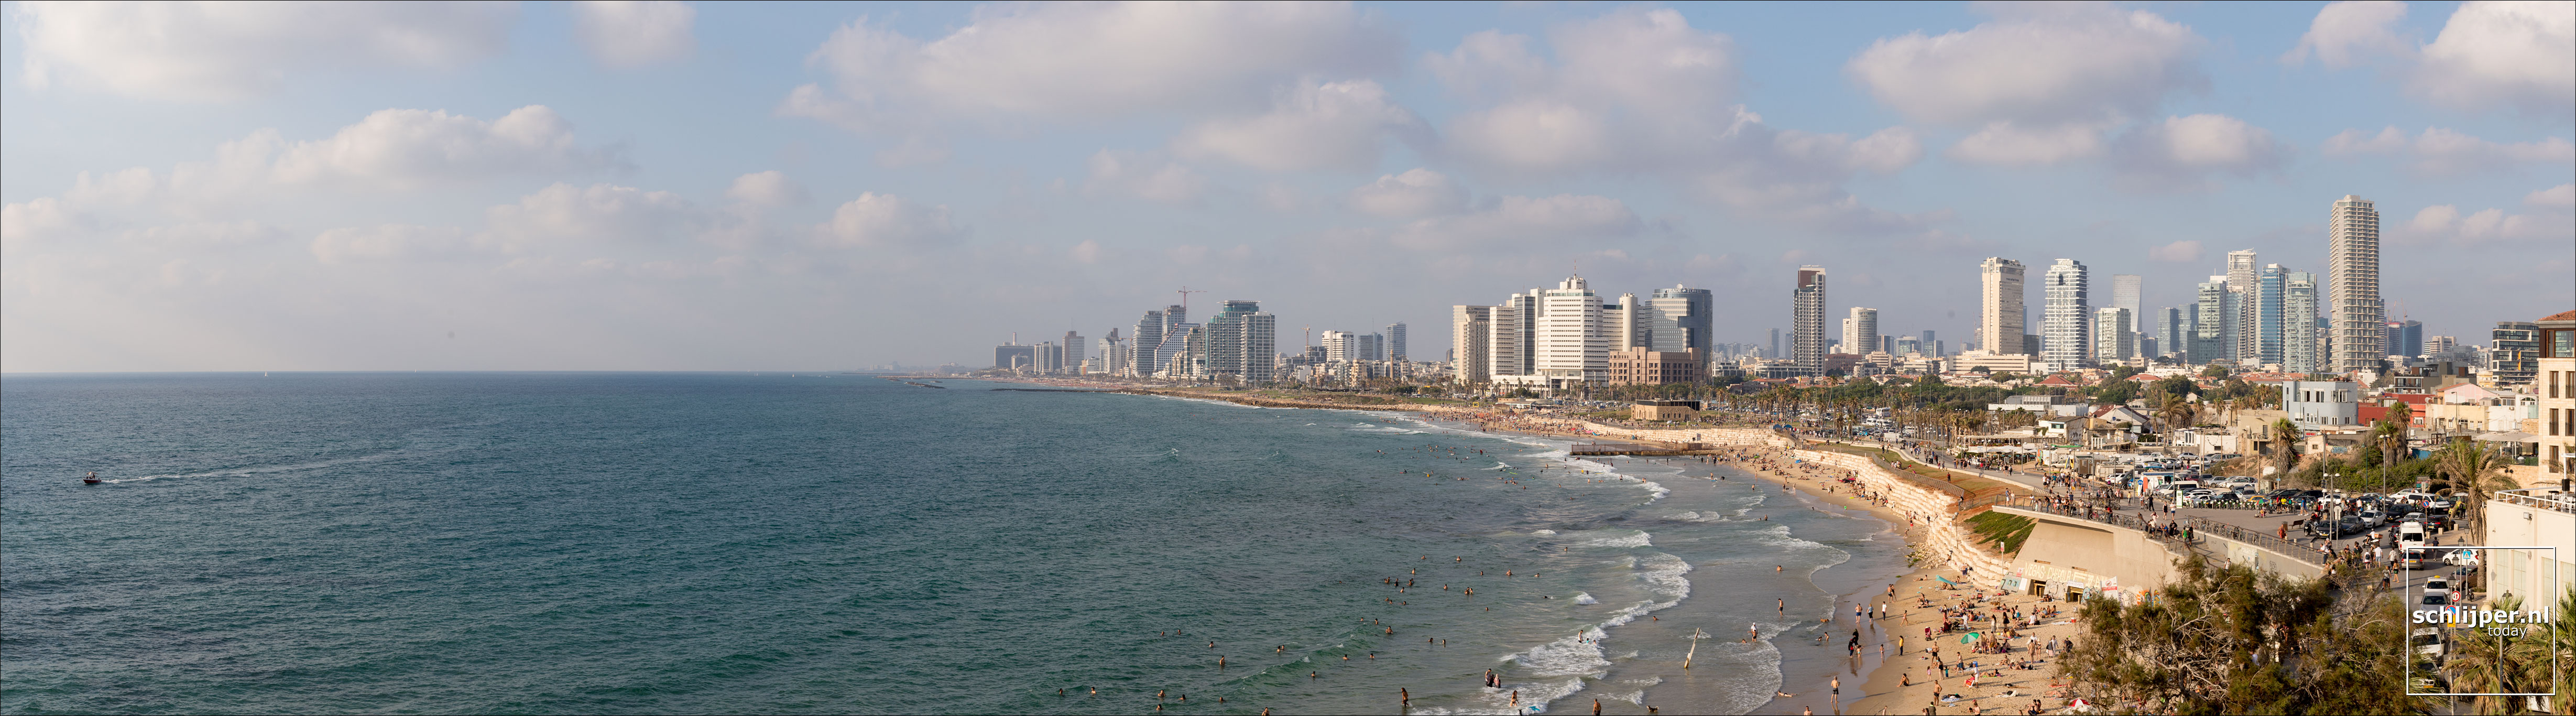 Israel, Tel Aviv, 21 juni 2019